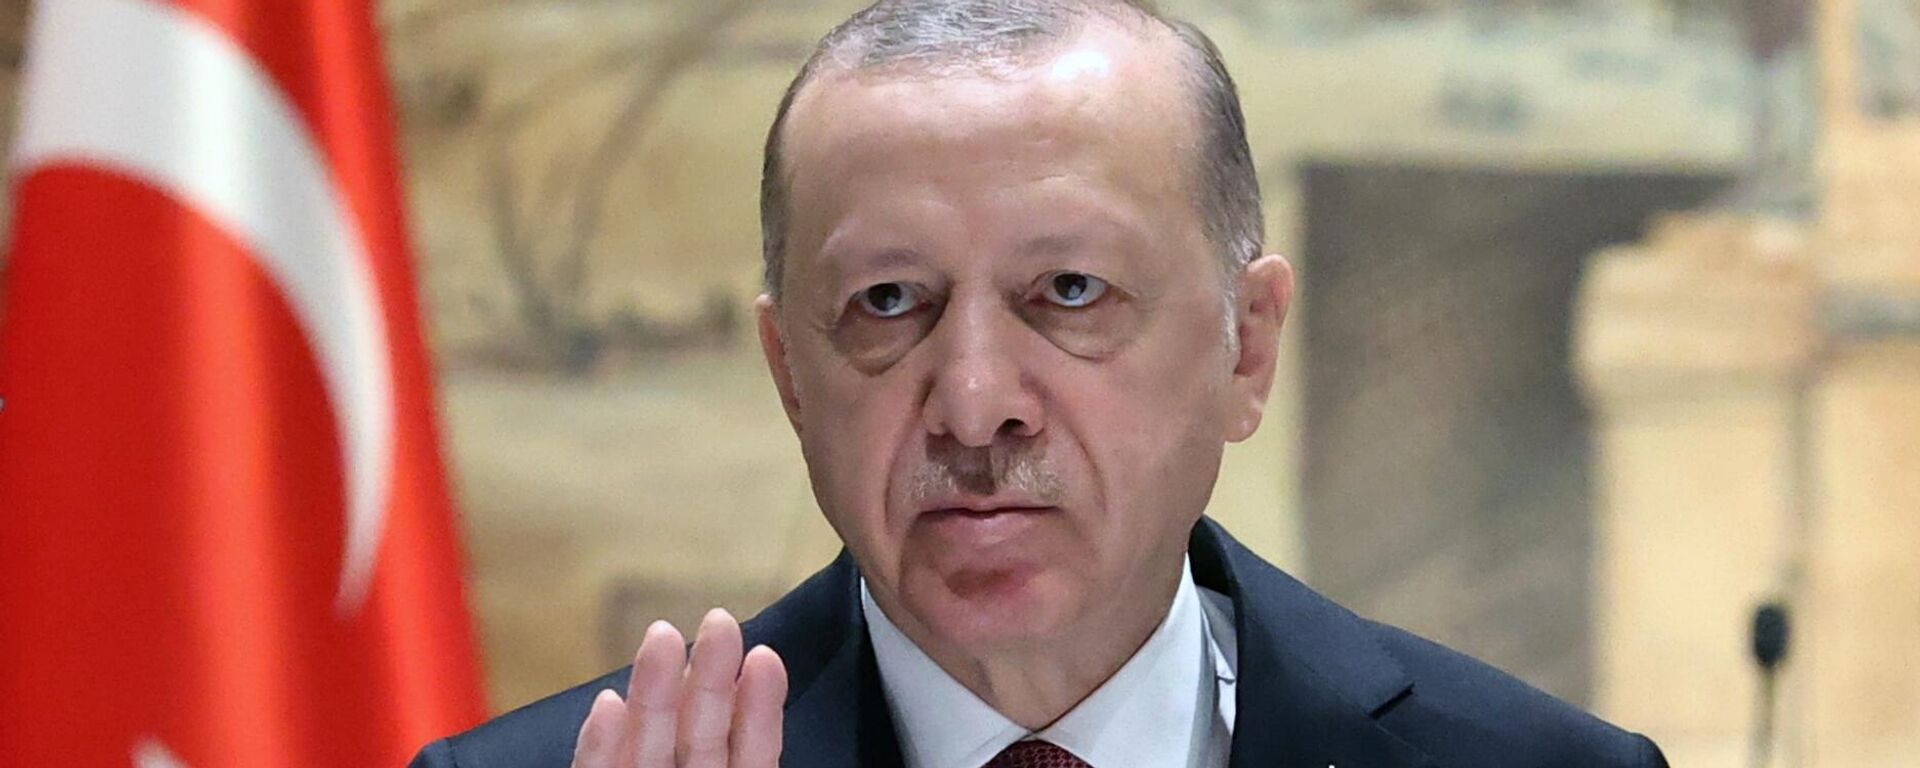 O presidente da Turquia, Recep Tayyip Erdogan, gesticula durante negociações entre Rússia e Ucrânia, em Istambul, 29 de março de 2022 - Sputnik Brasil, 1920, 26.06.2022